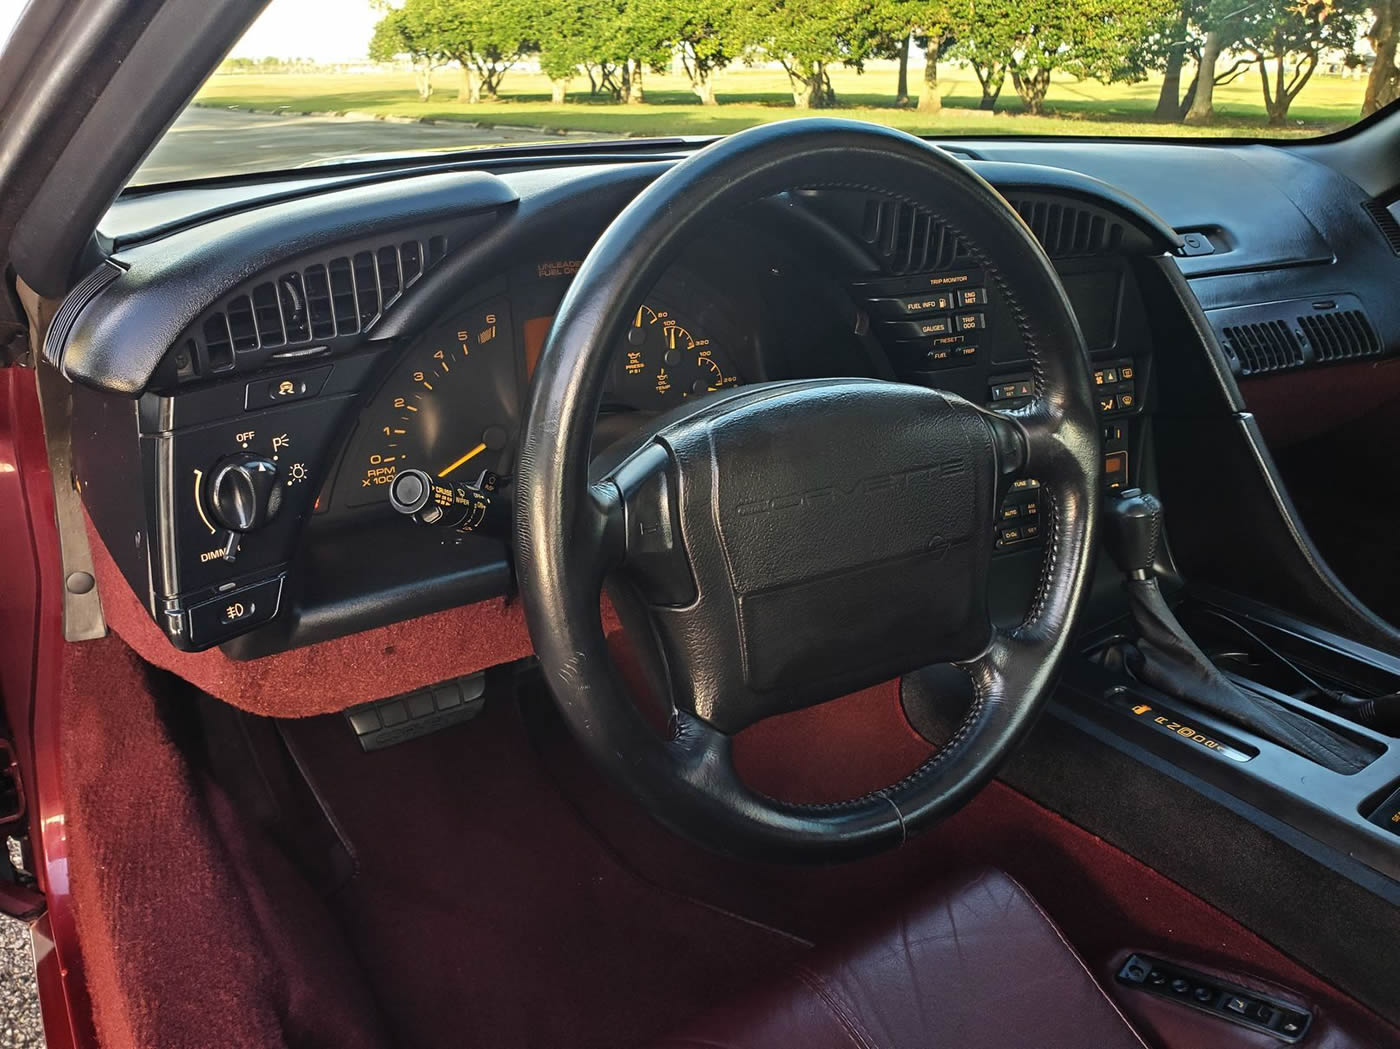 1993 Corvette 40th Anniversary Coupe